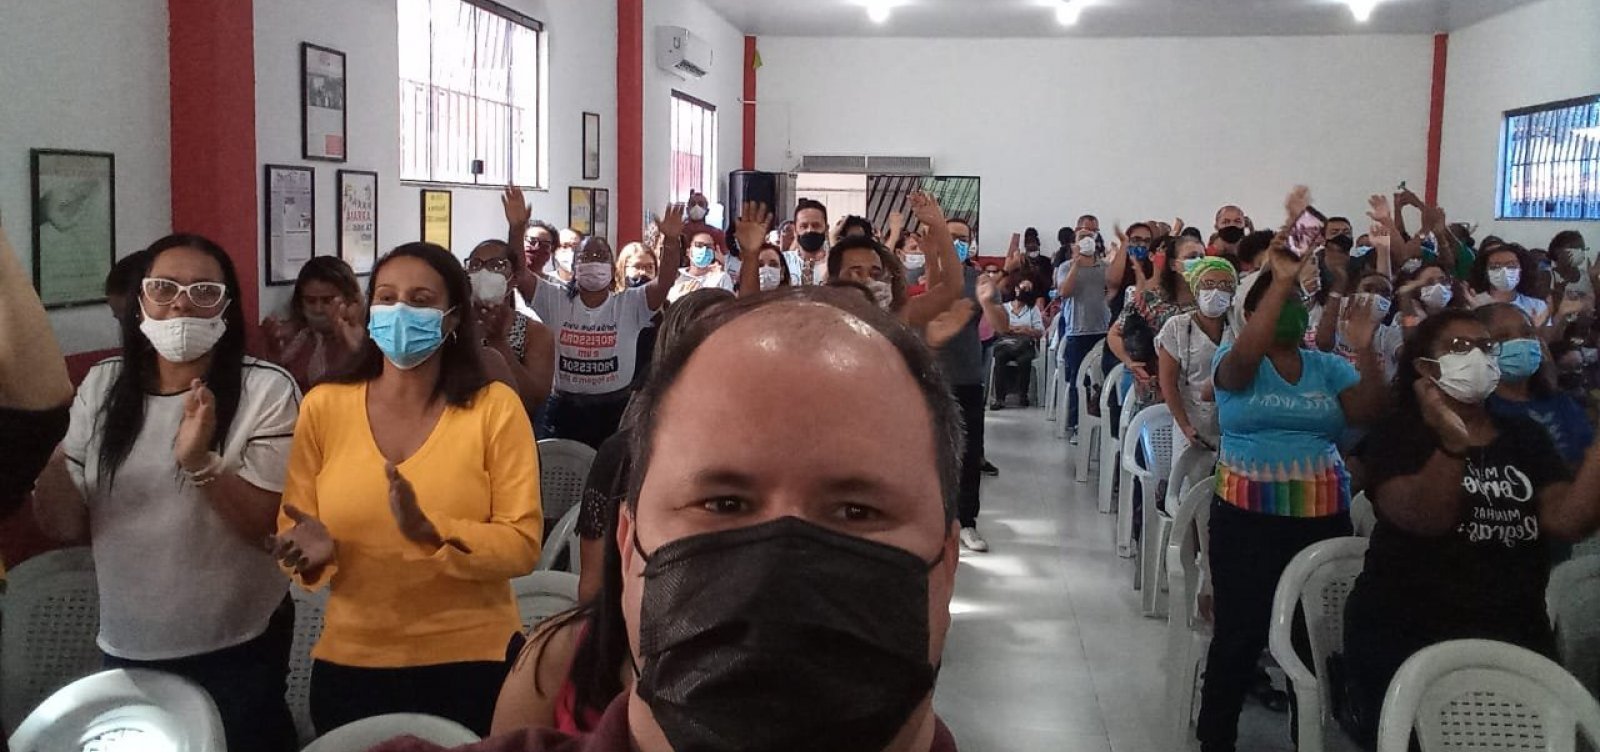 Após 2 semanas de greve, professores da rede municipal de Camaçari retornam às salas sem negociação  